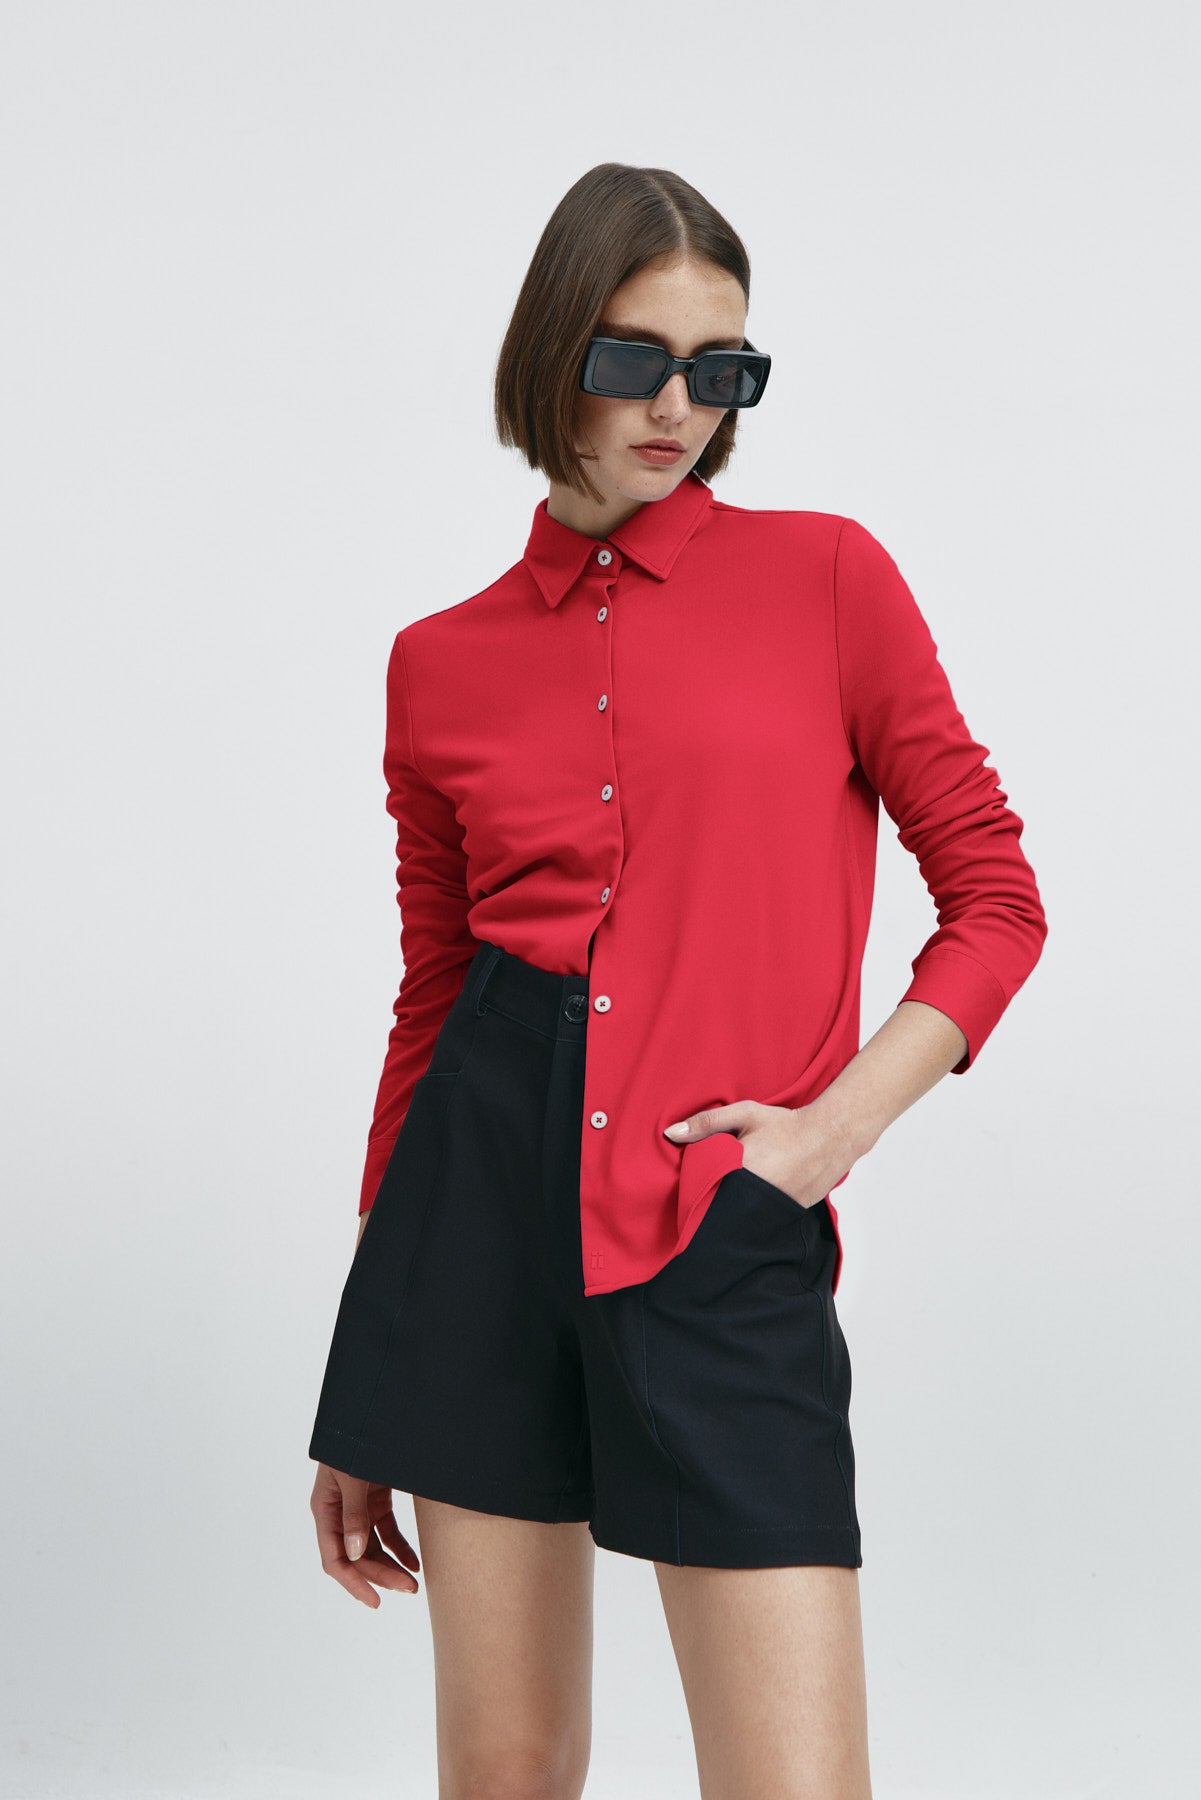 Camisa rojo atlanta oversize de Sepiia, elegante y resistente a manchas y arrugas. Foto flexibillidad